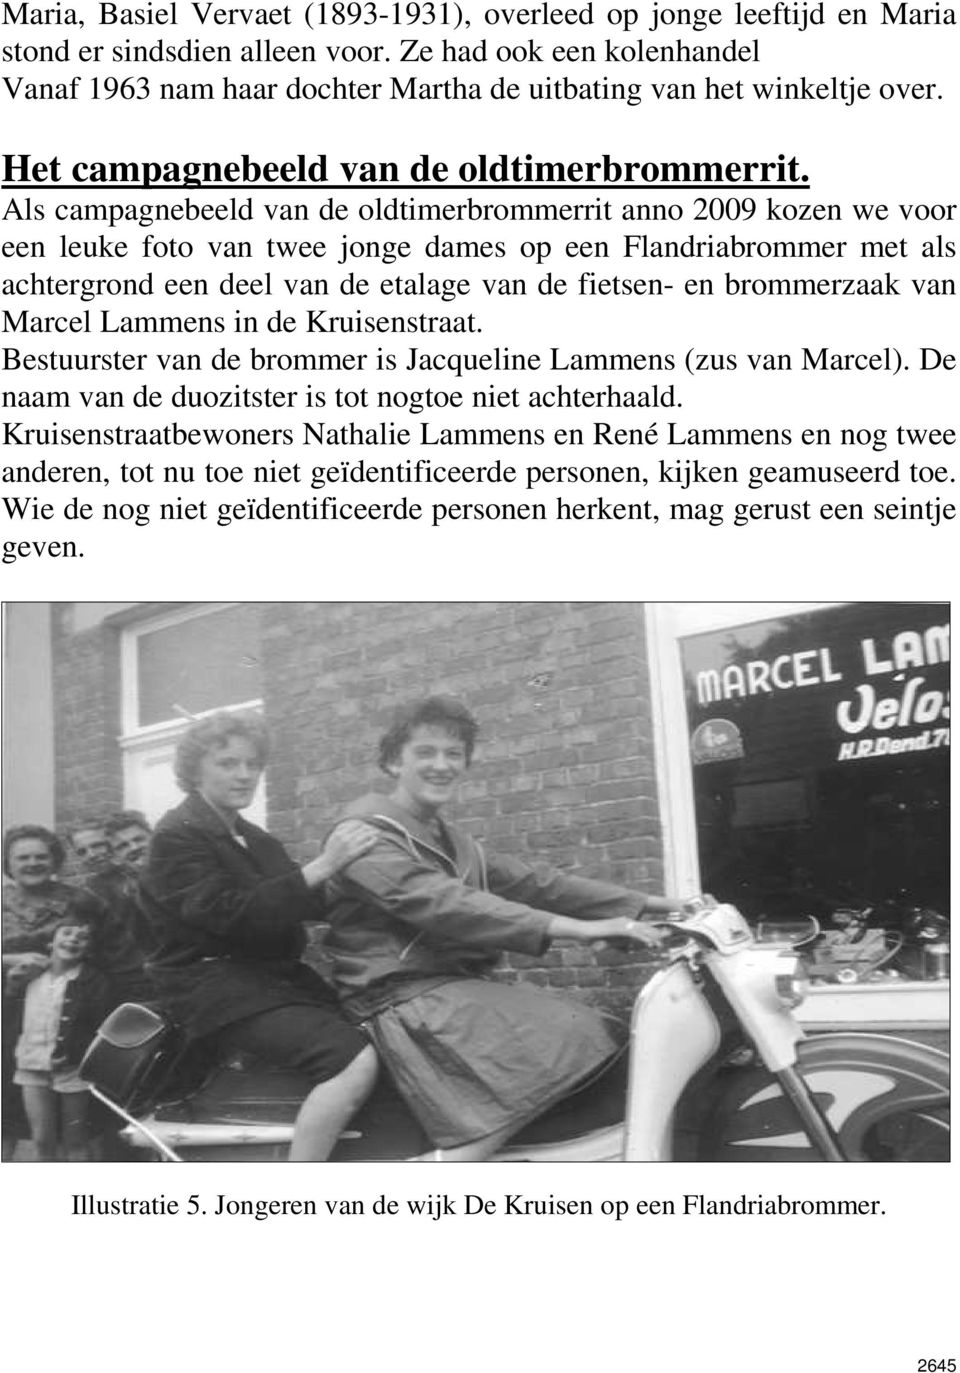 Als campagnebeeld van de oldtimerbrommerrit anno 2009 kozen we voor een leuke foto van twee jonge dames op een Flandriabrommer met als achtergrond een deel van de etalage van de fietsen- en